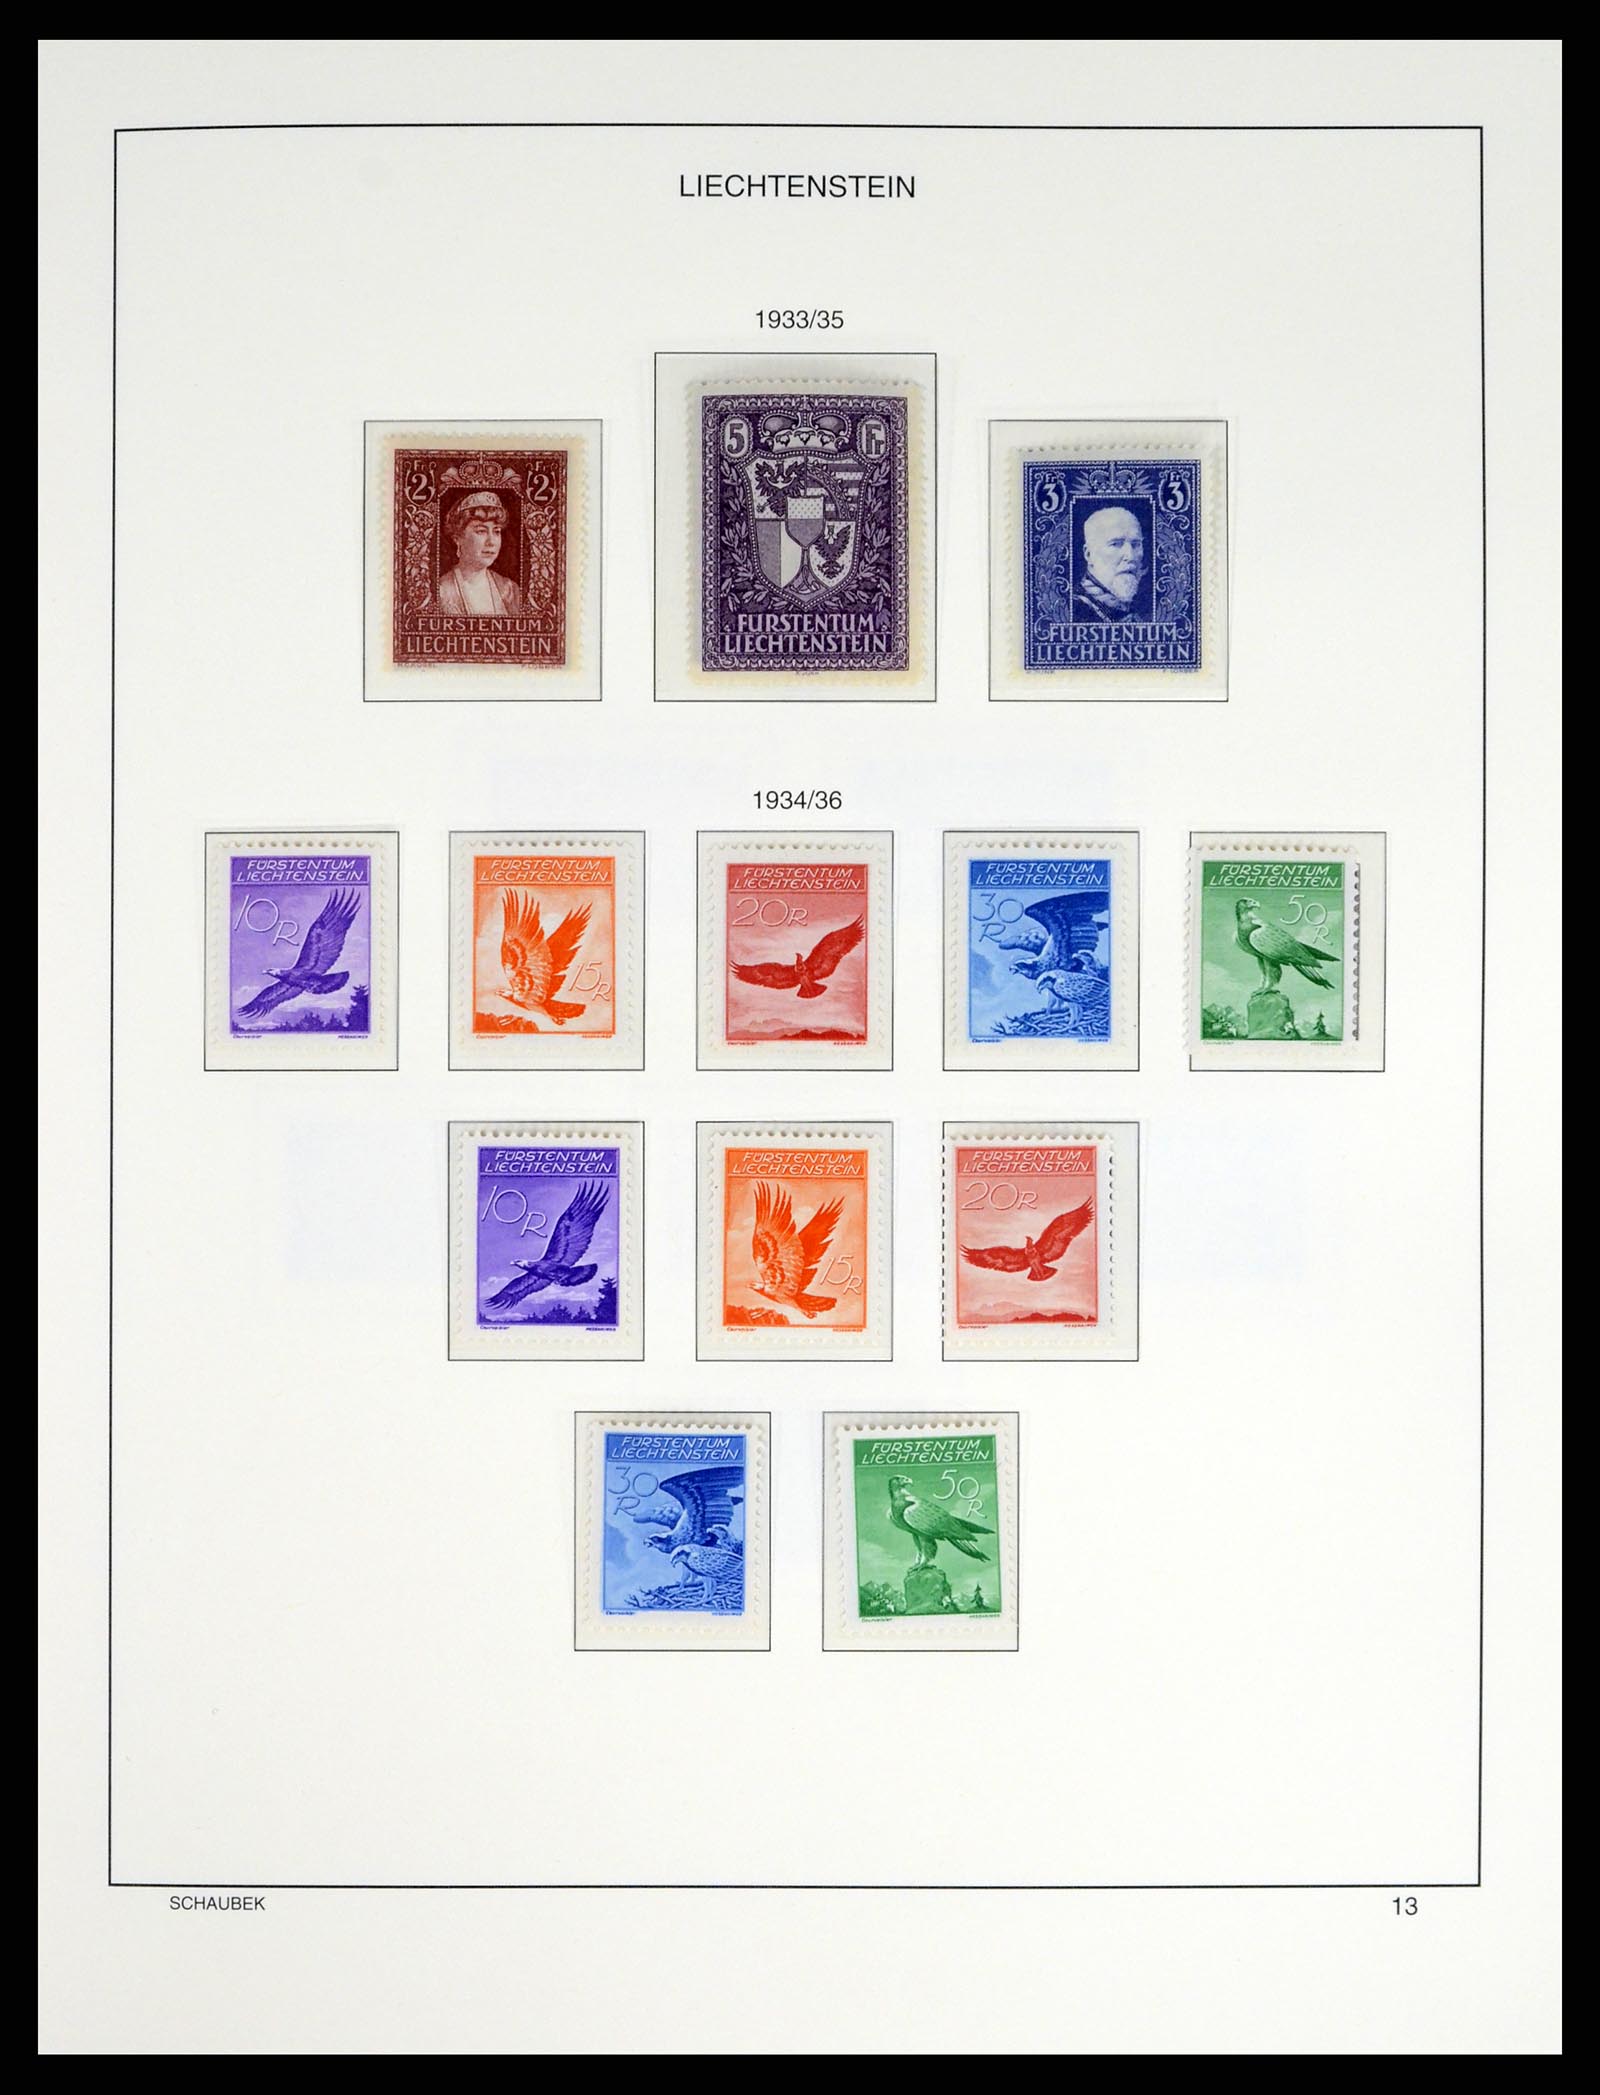 37547 014 - Stamp collection 37547 Liechtenstein 1912-2011.